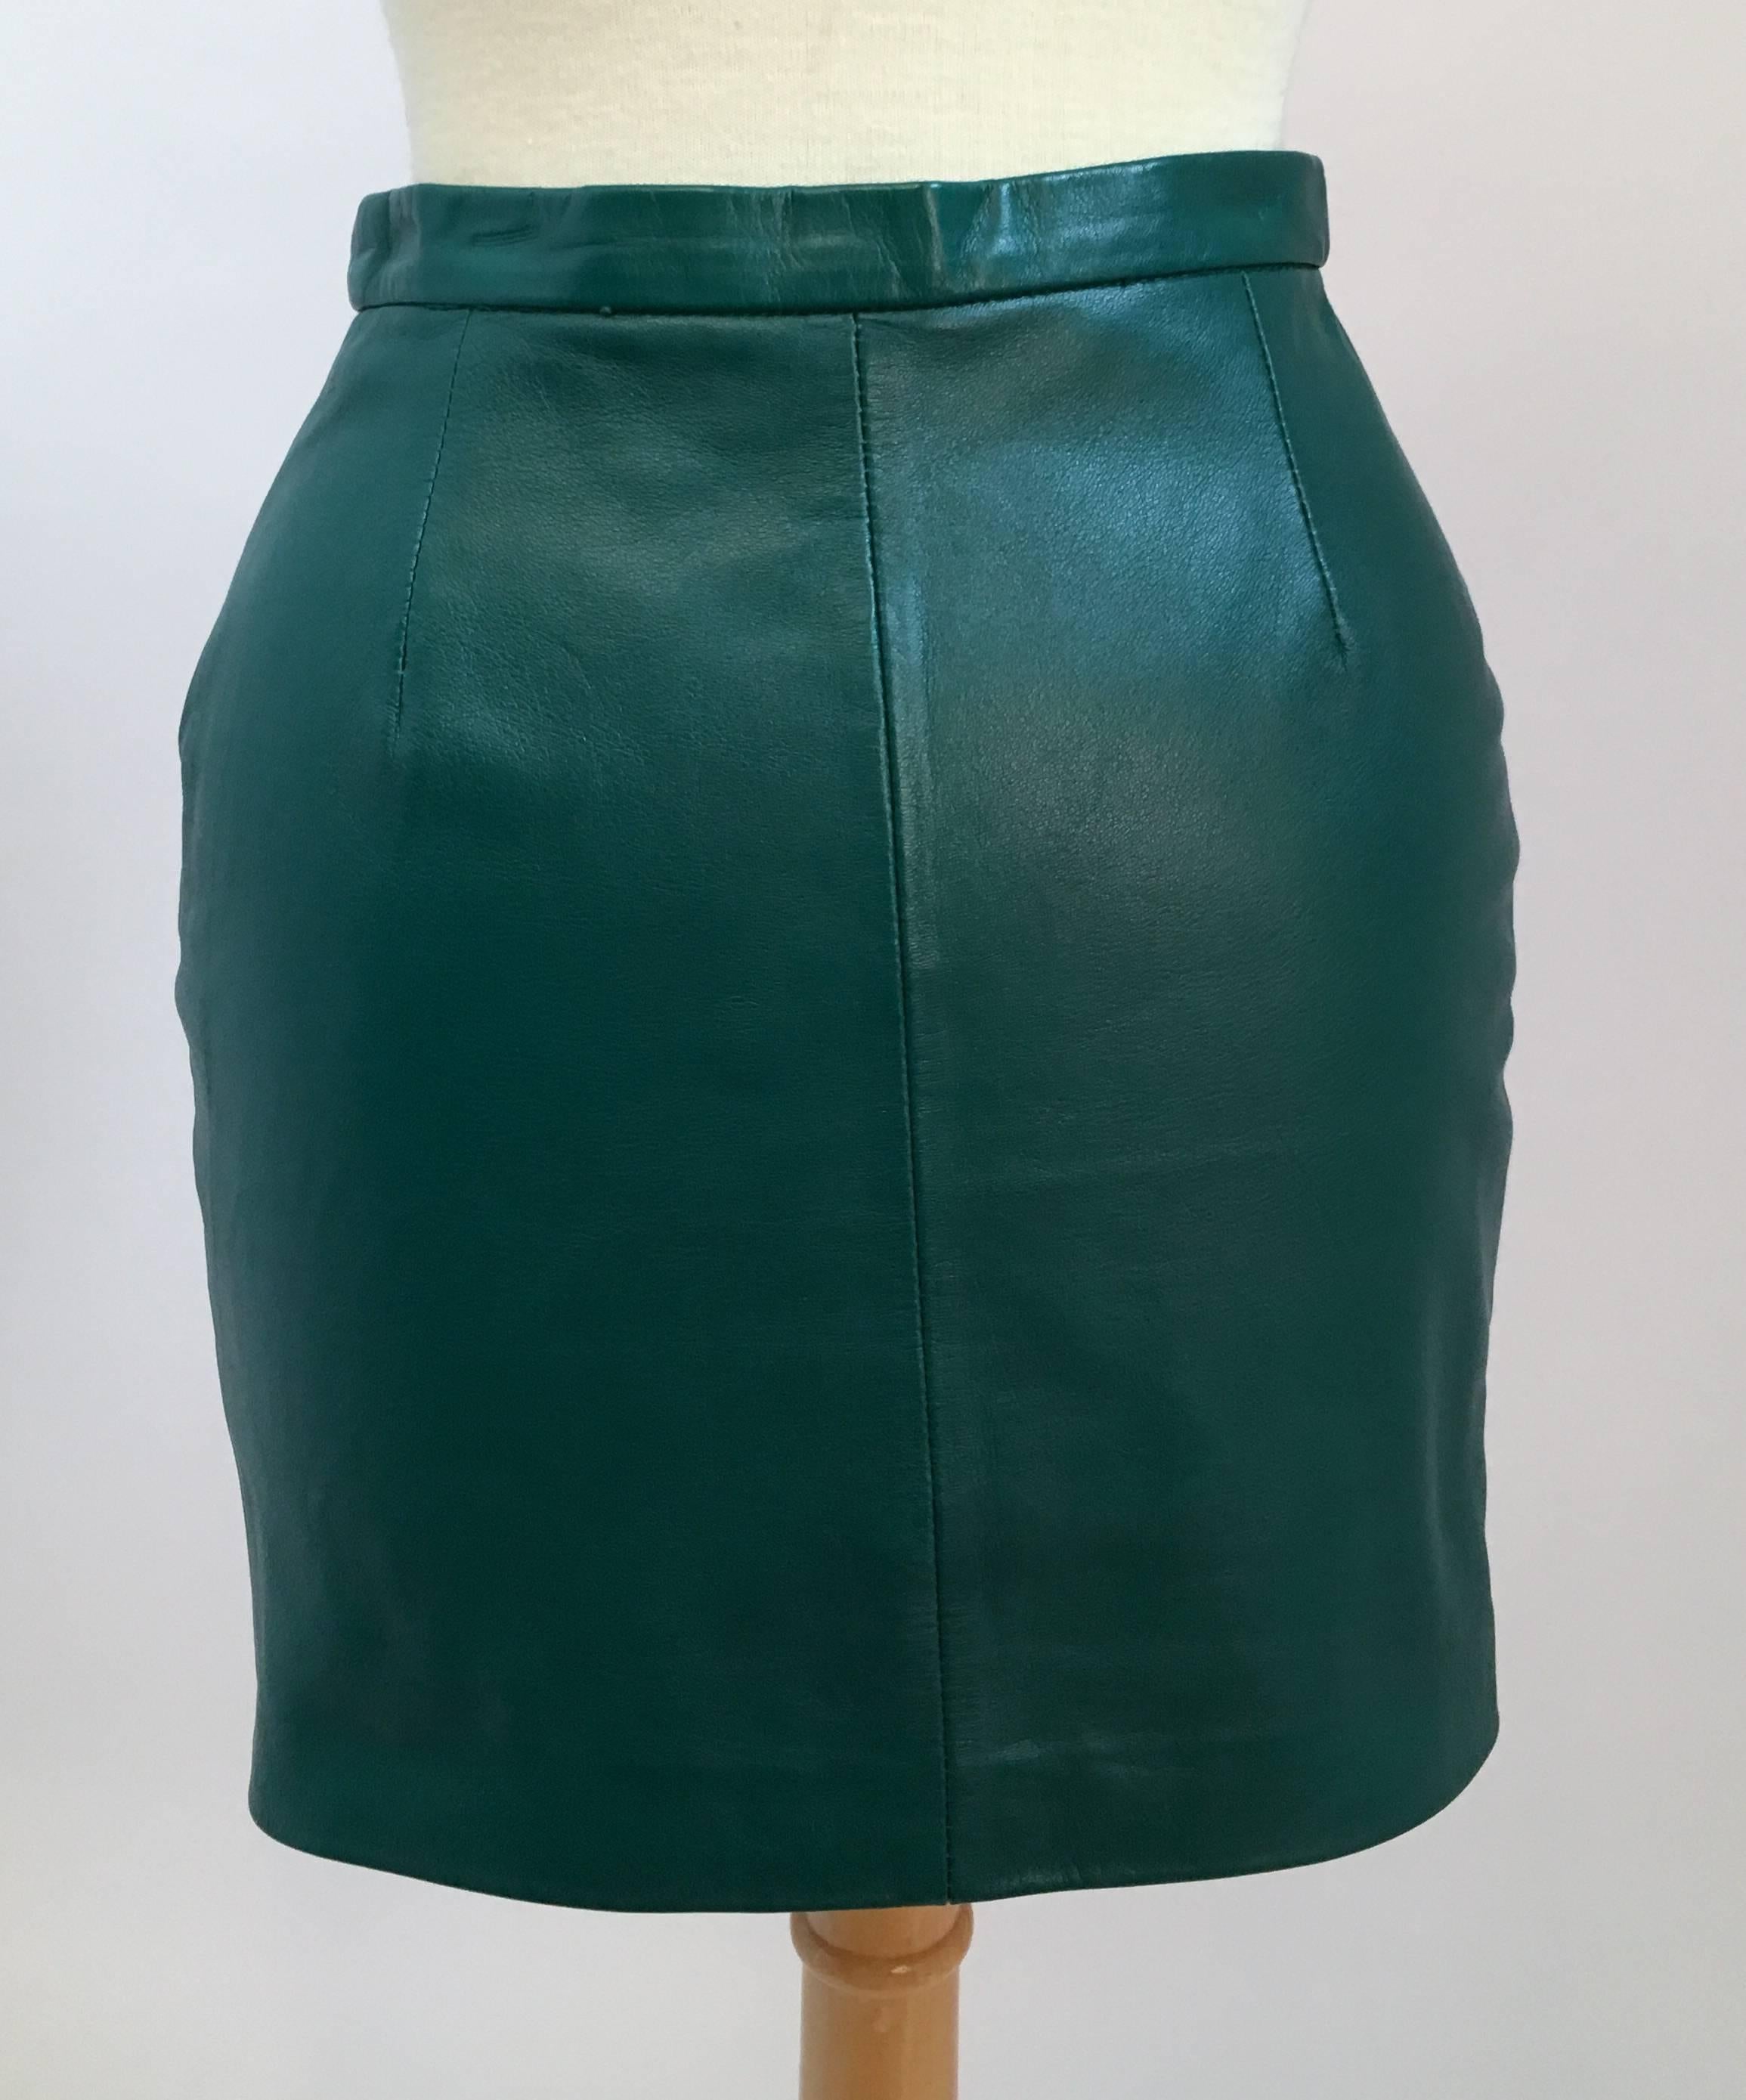 emerald green skirt suit